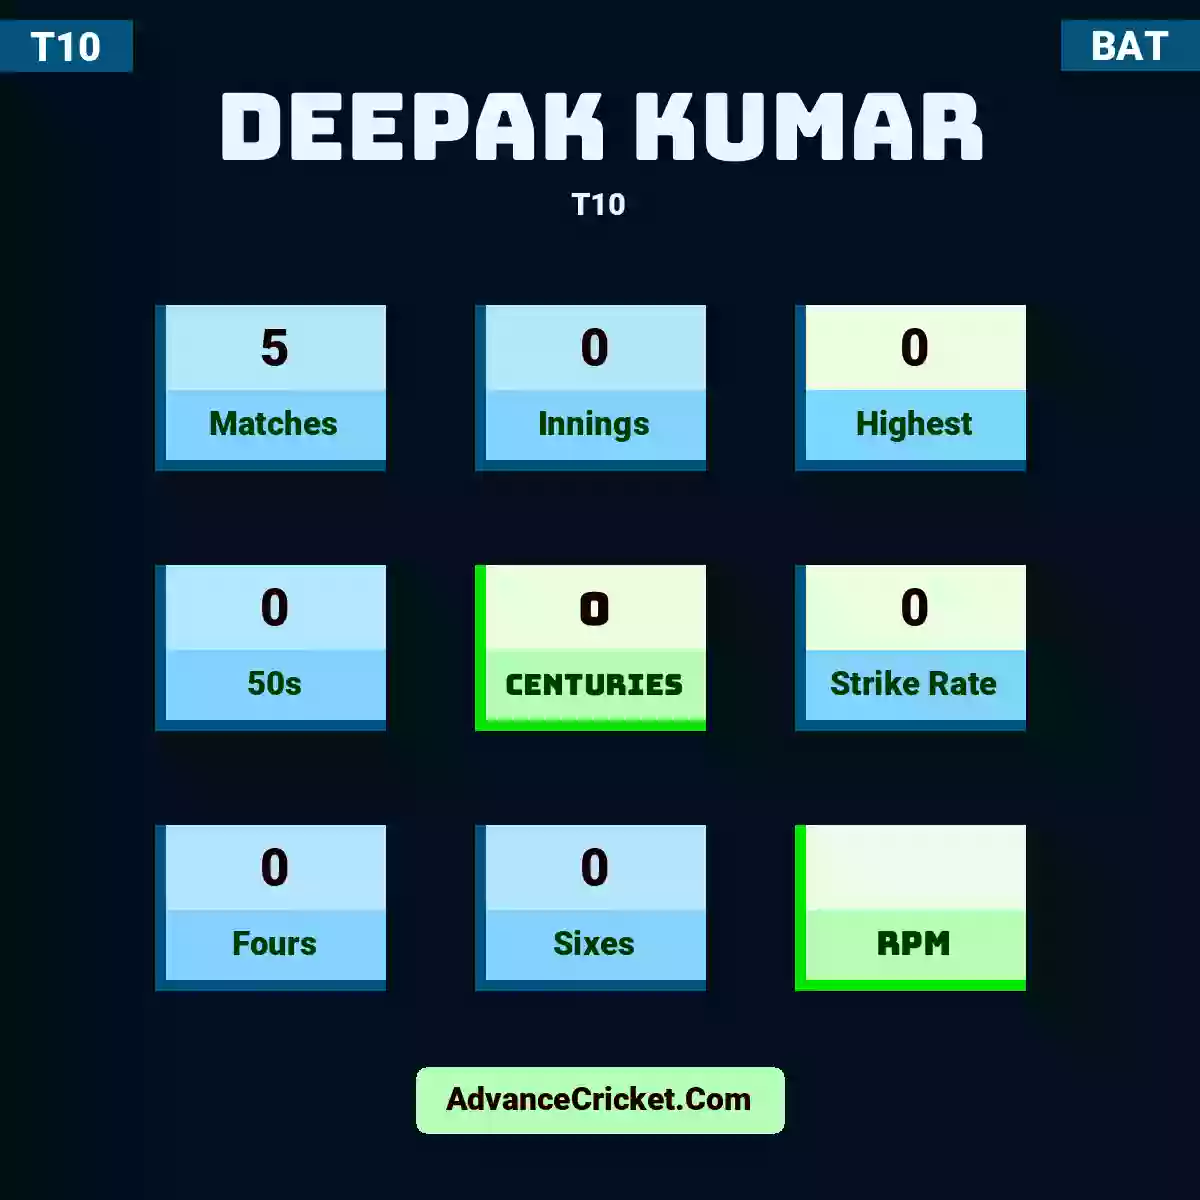 Deepak Kumar T10 , Deepak Kumar played 5 matches, scored 0 runs as highest, 0 half-centuries, and 0 centuries, with a strike rate of 0. D.Kumar hit 0 fours and 0 sixes.